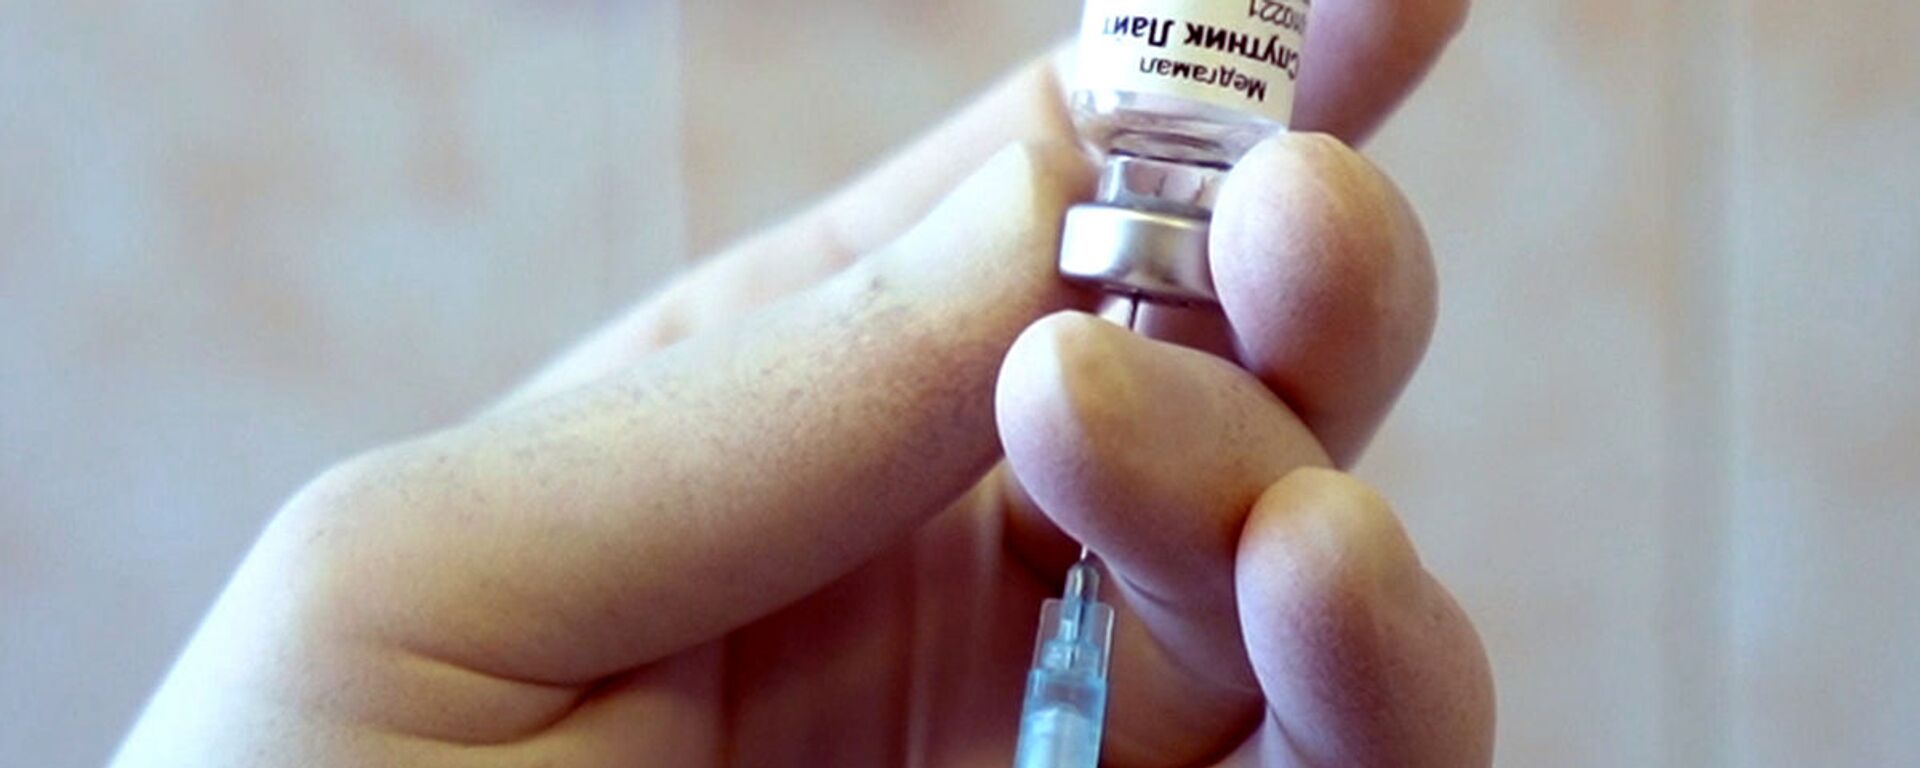 وزیر بهداشت روسیه: واکسن اسپوتنیک لایت عرضه شد - اسپوتنیک ایران  , 1920, 26.06.2021